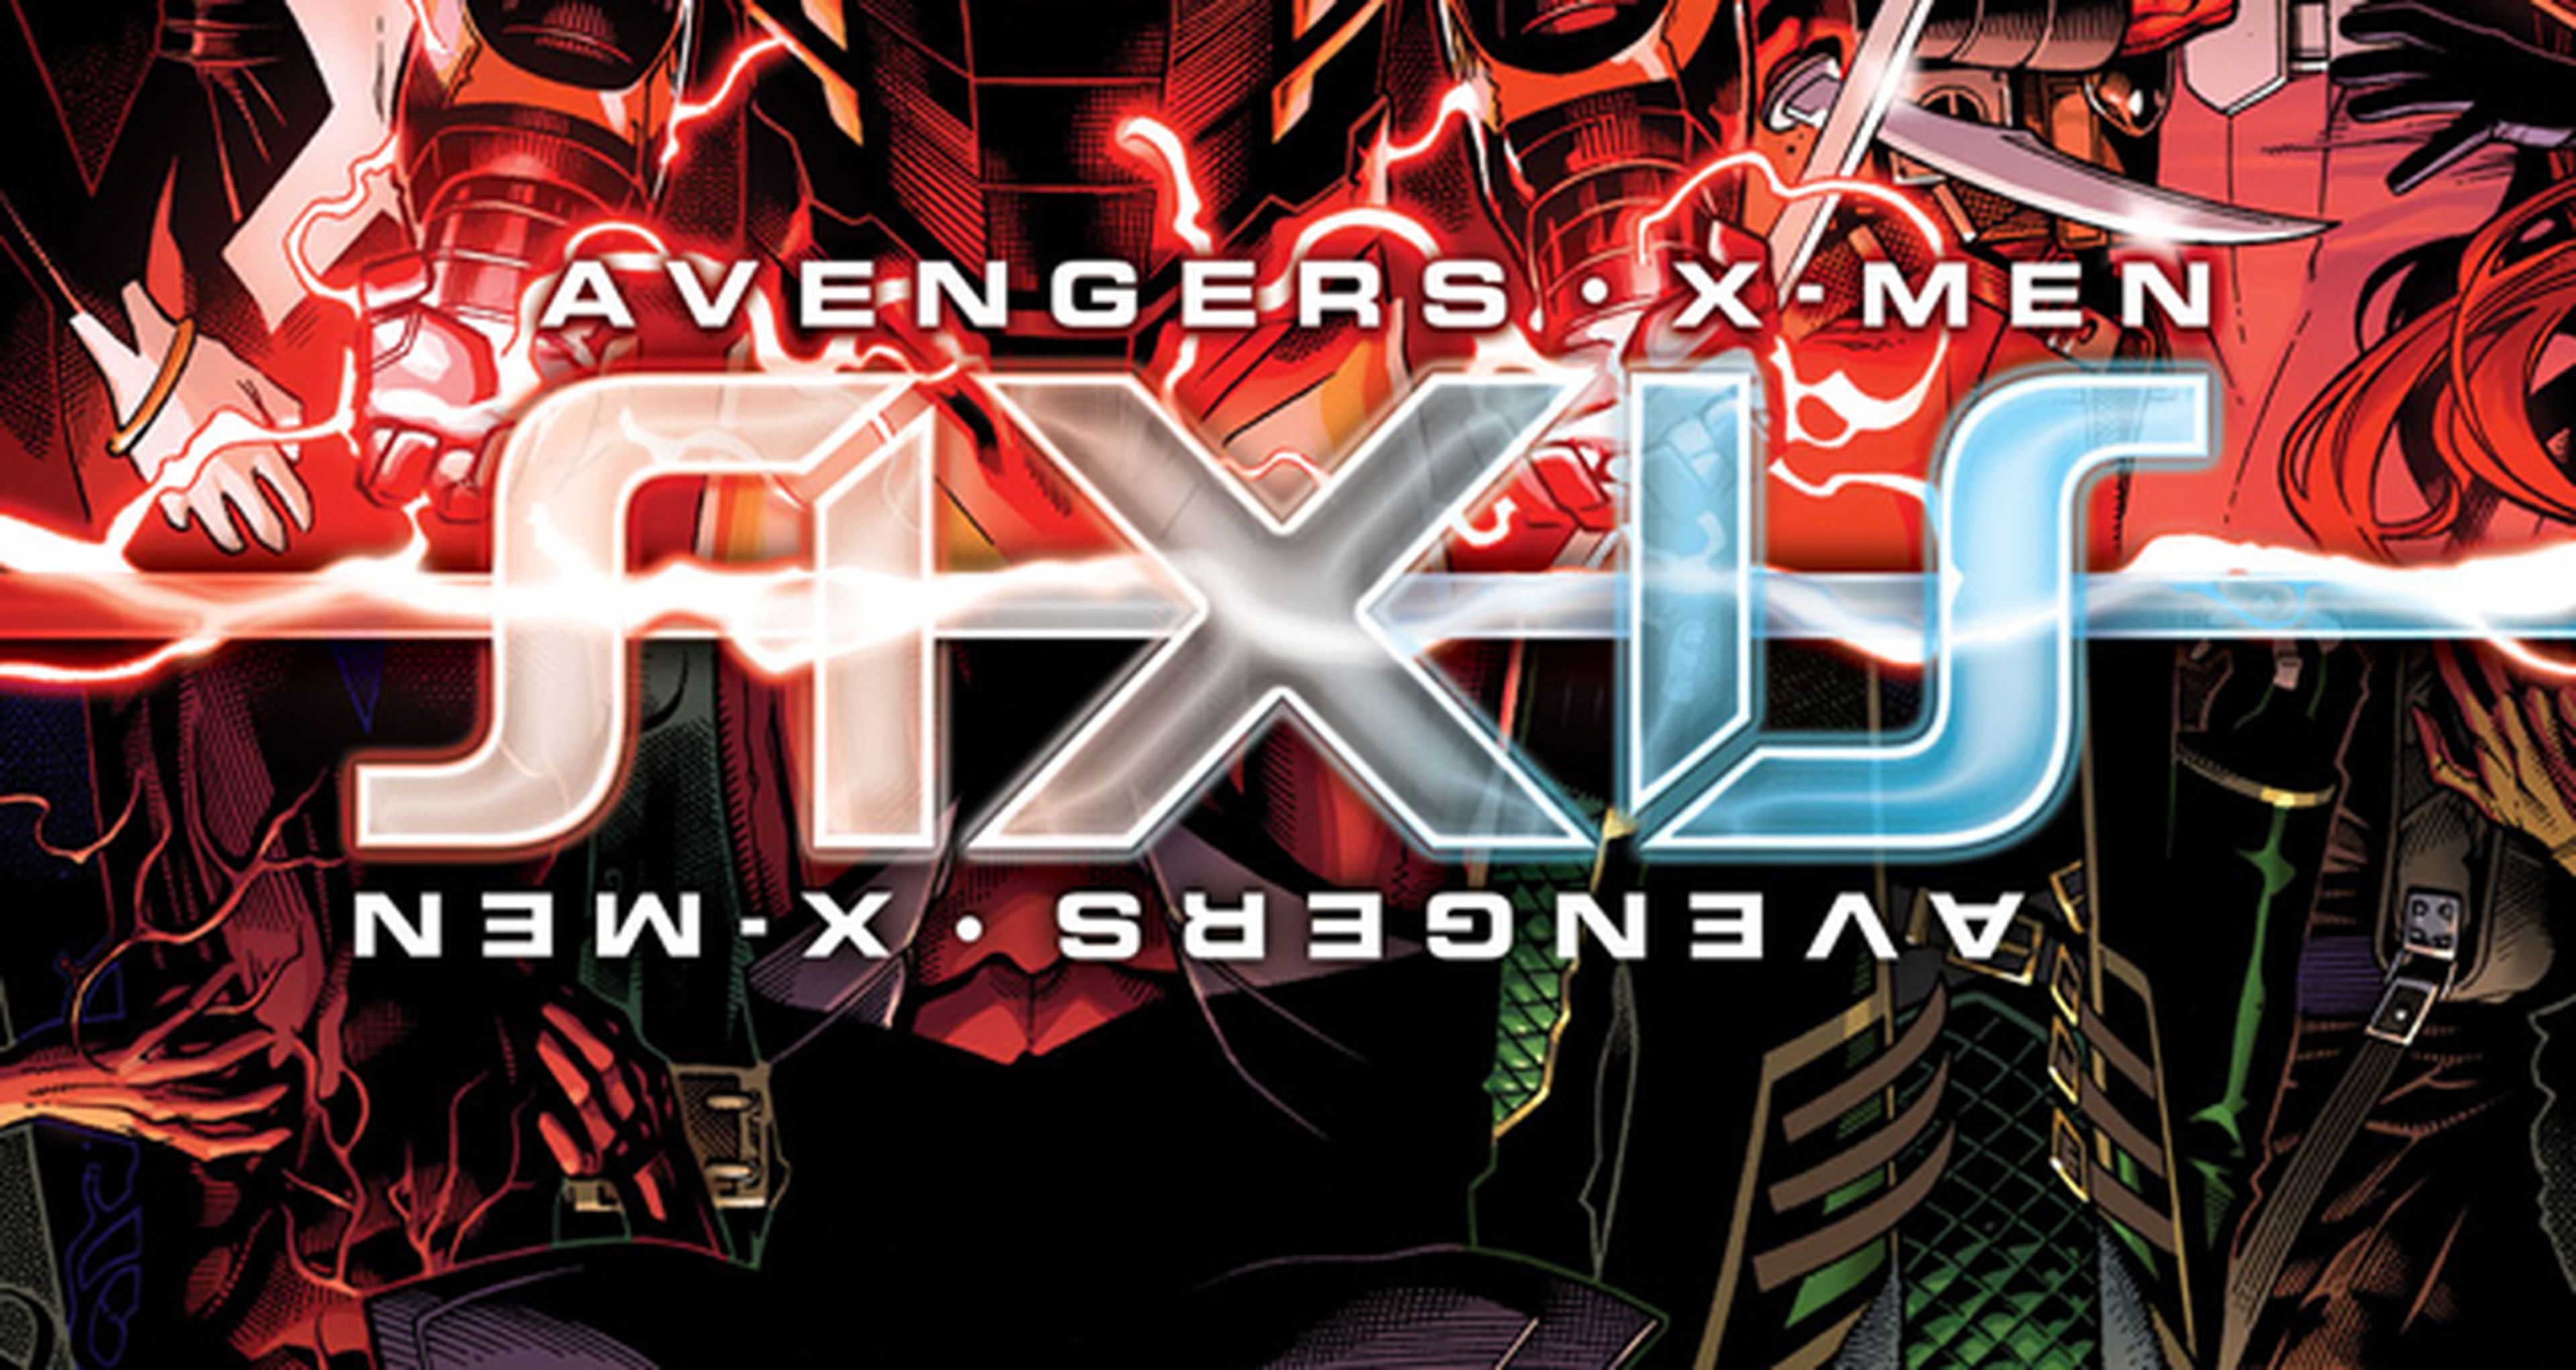 Sinopsis y pósteres de Axis, el próximo crossover de Marvel